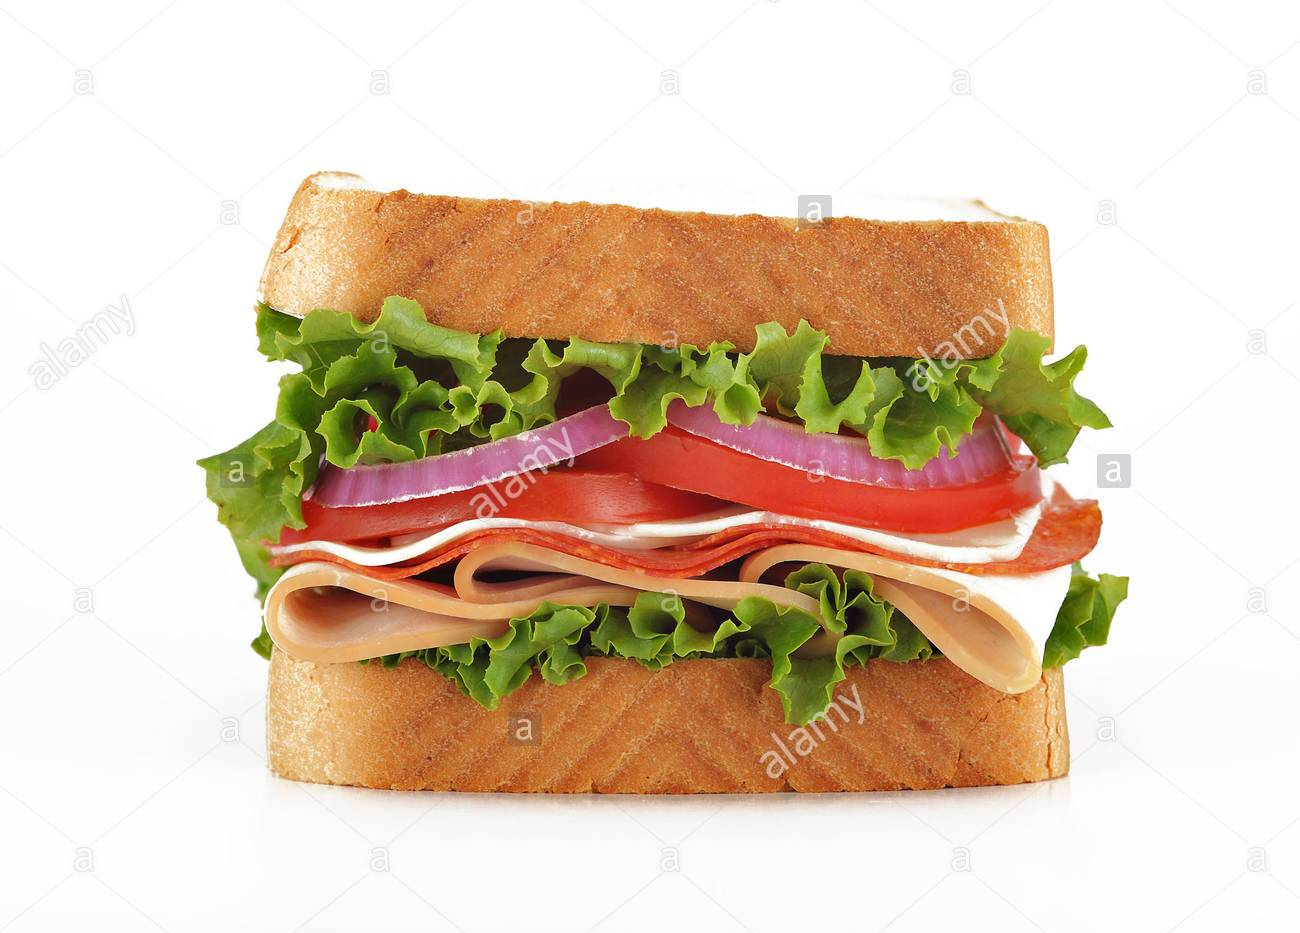 deli-sandwich-be397g.jpg